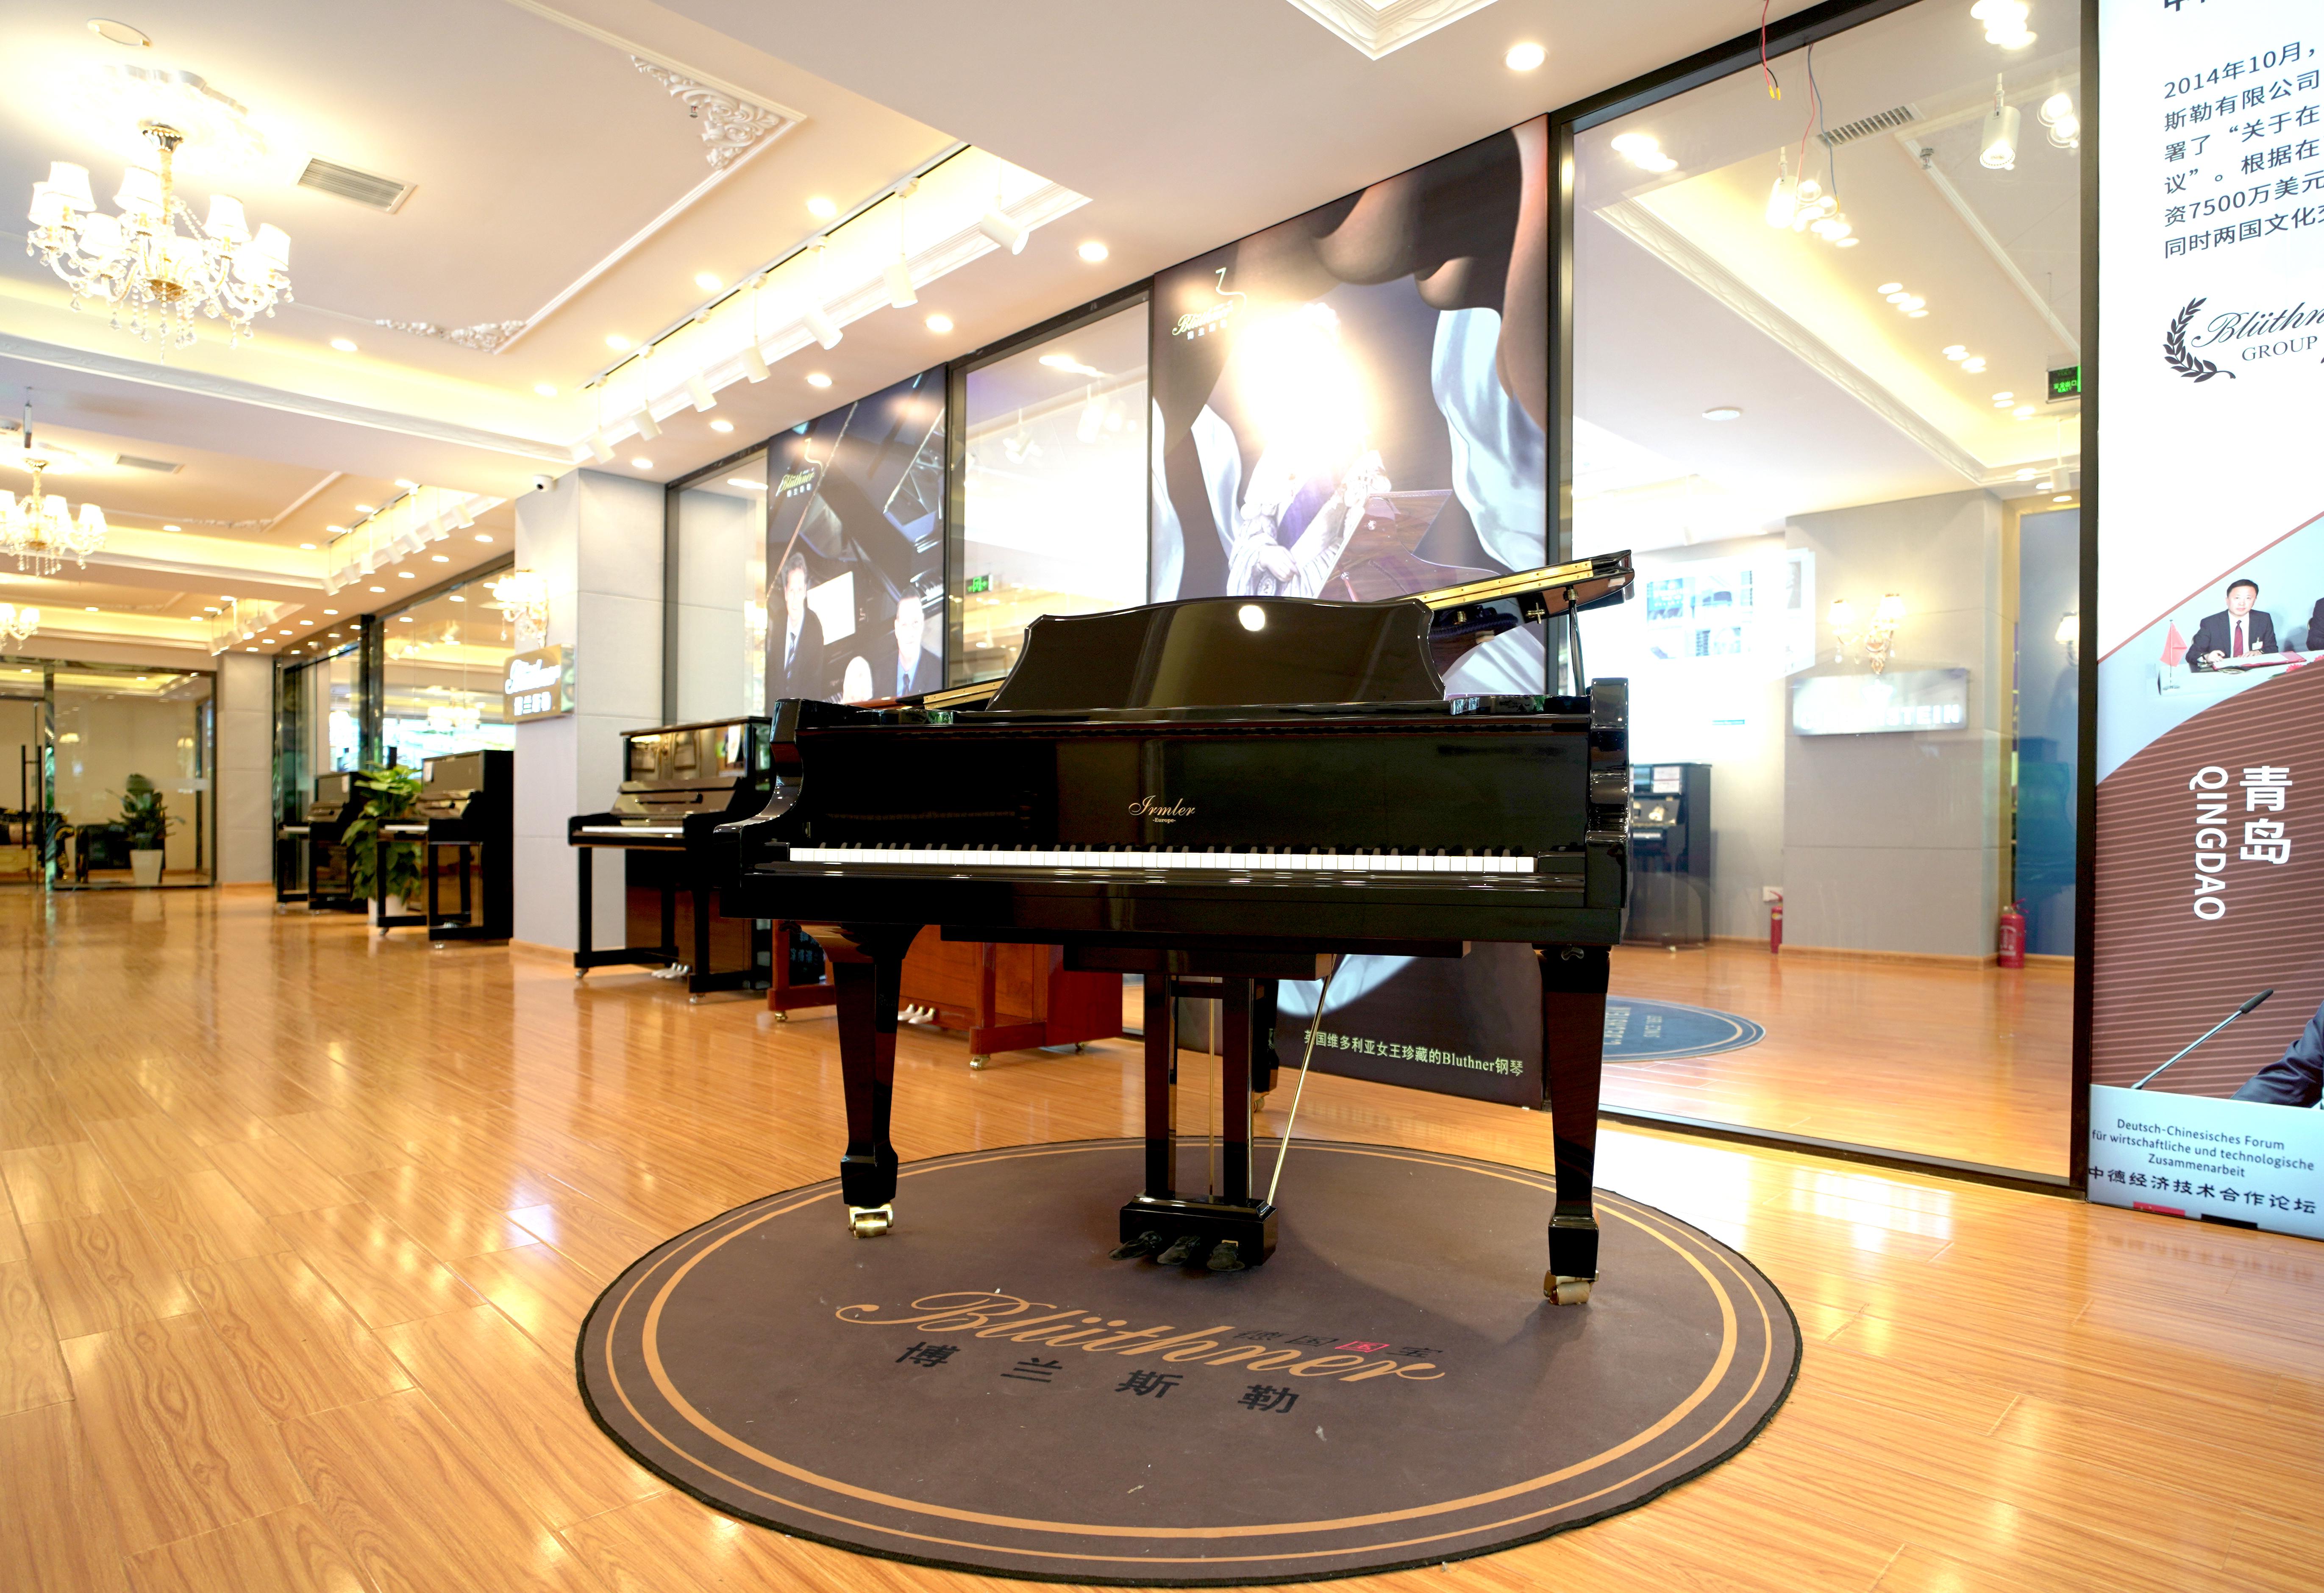 德国品牌钢琴南京旗舰店,1000㎡实体店展厅,打造体验式钢琴选购新地标